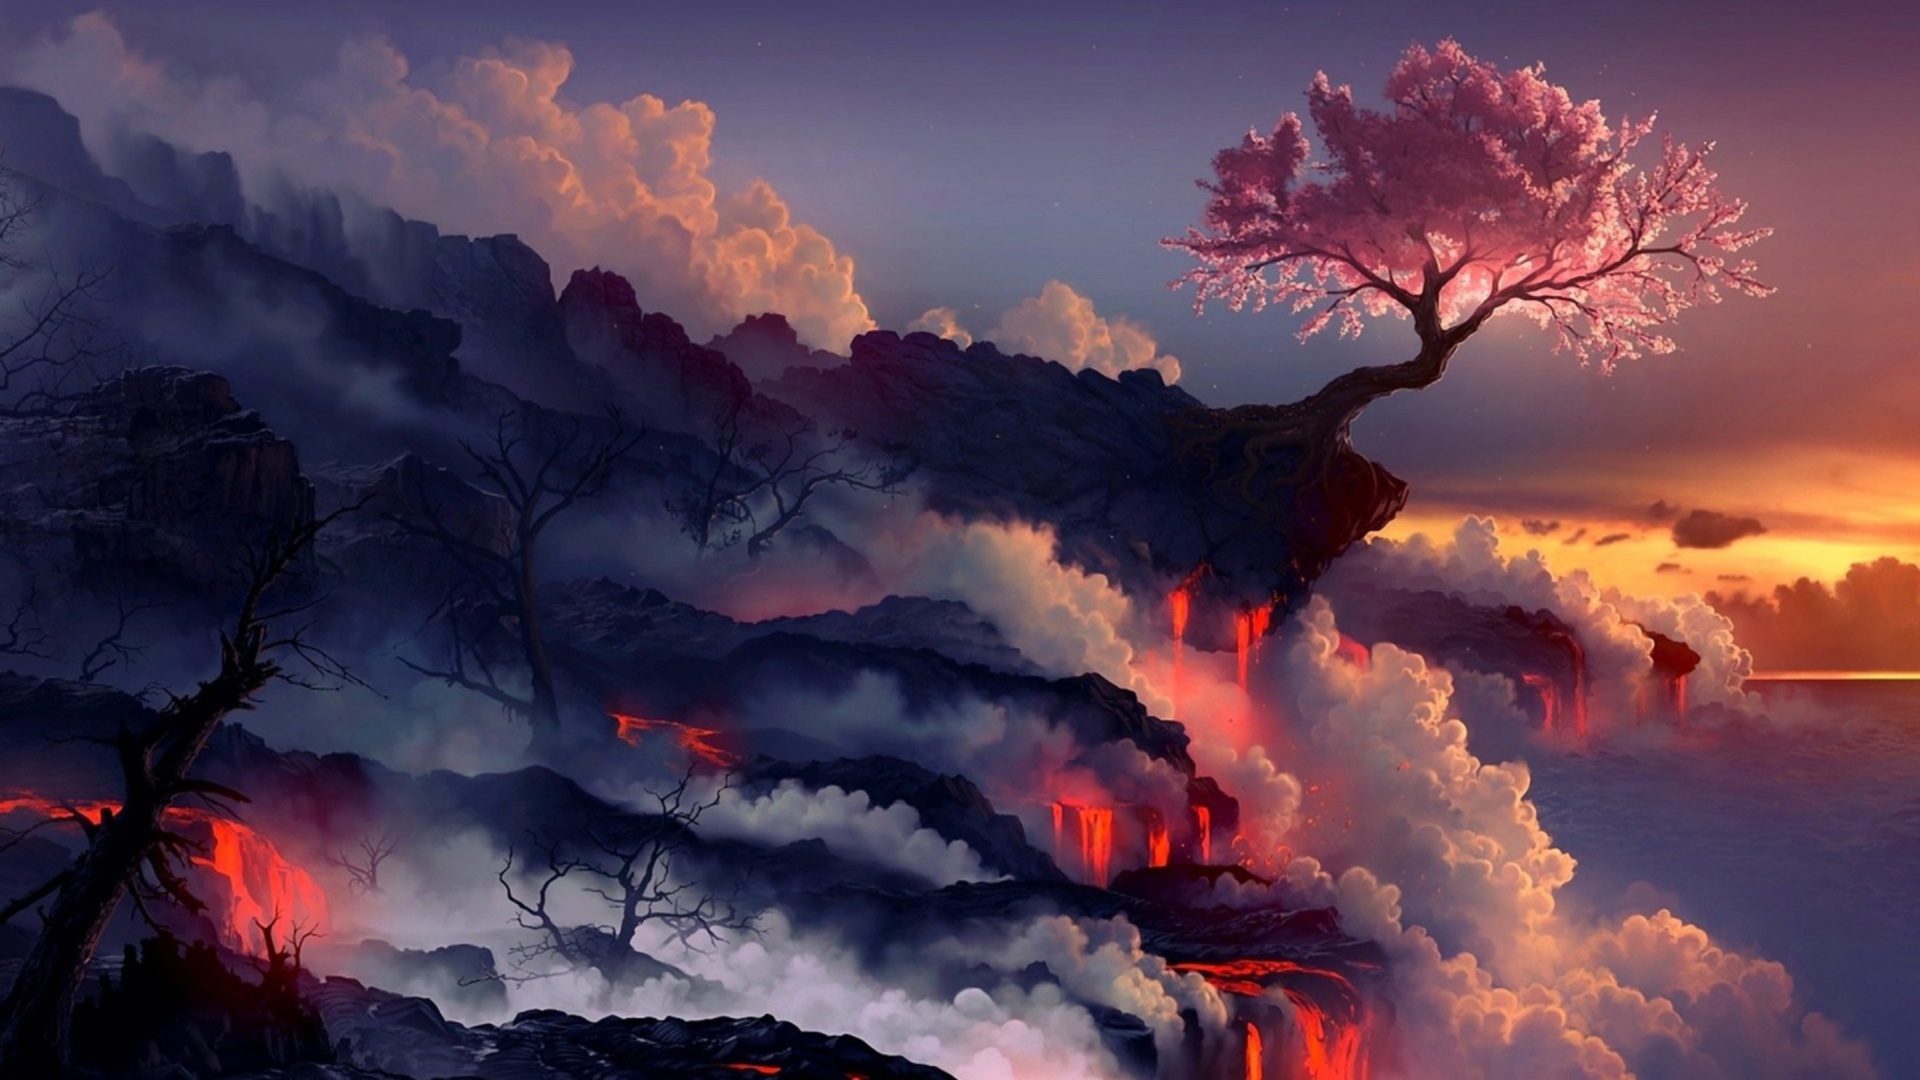 Anime Dark Landscape Wallpaper Desktop Background At Cool